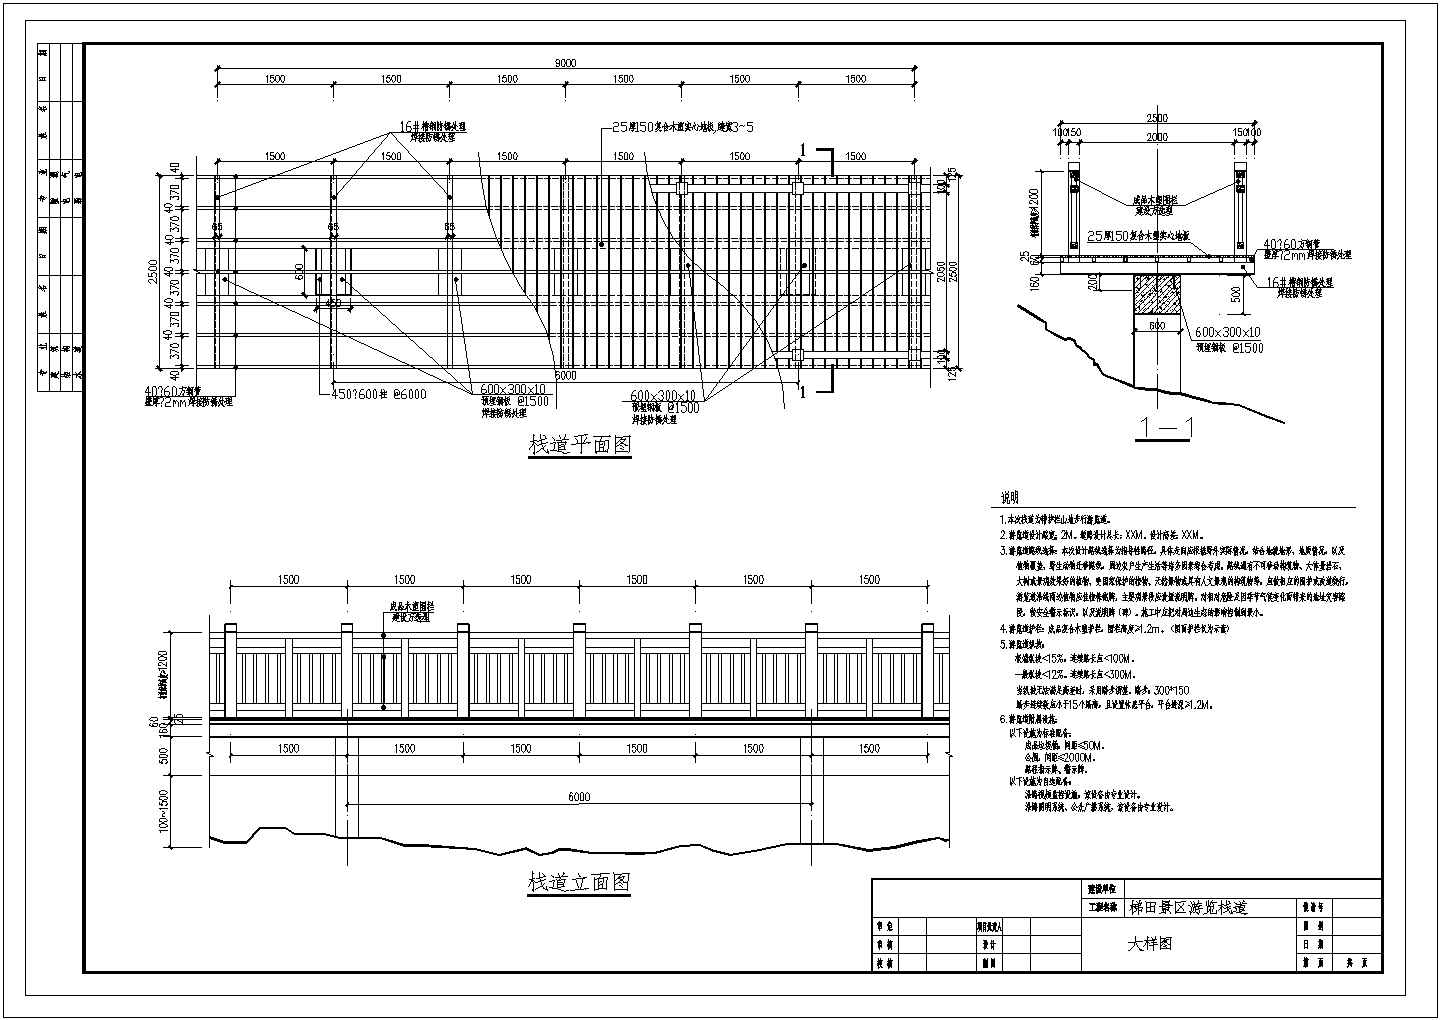 某景区混凝土基础钢结构防腐木栈道施工图CAD